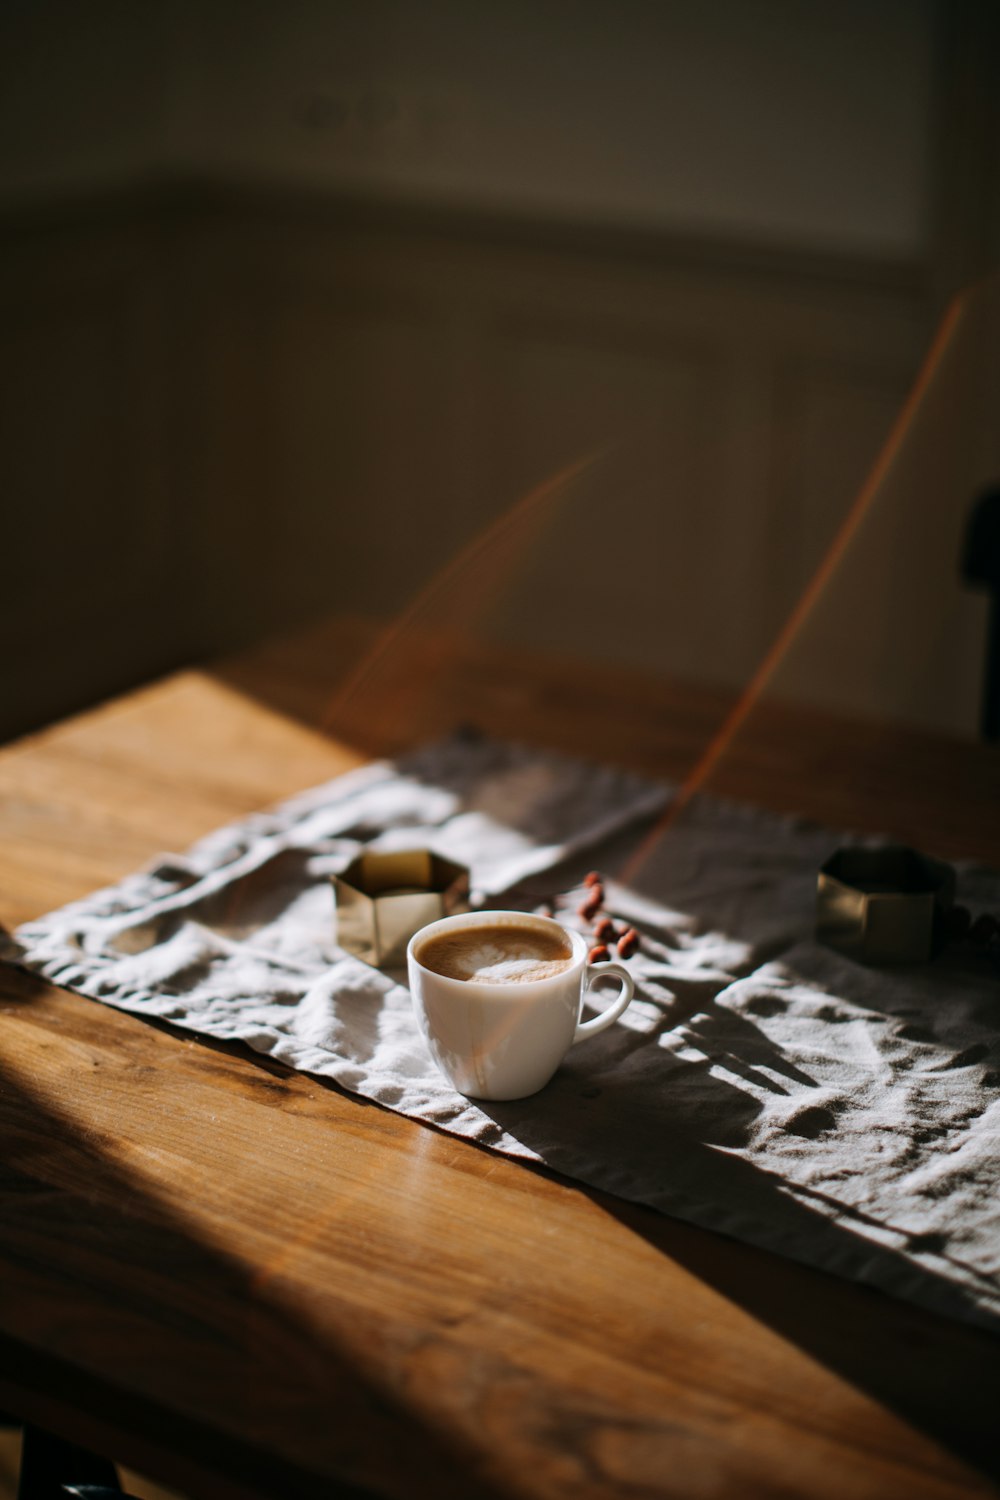 tazza da caffè sopra la tovaglia accanto al posacenere